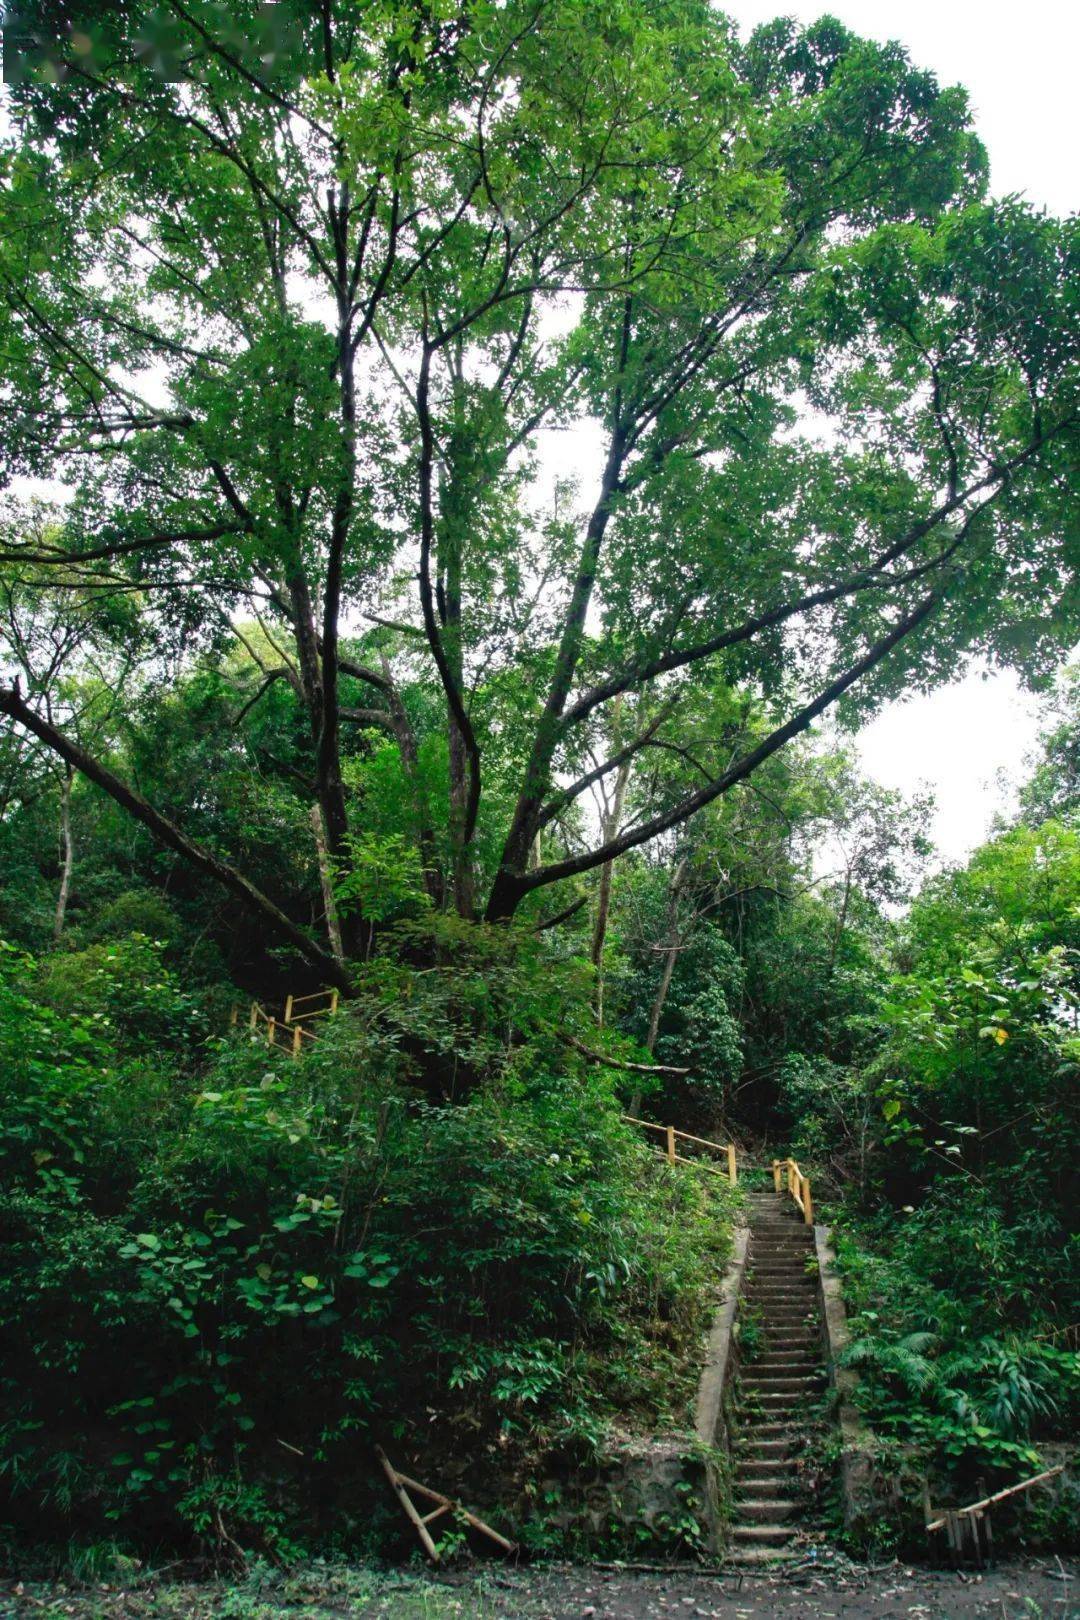 佛冈羊角山森林公园,它位于素有广州后花园和漂流